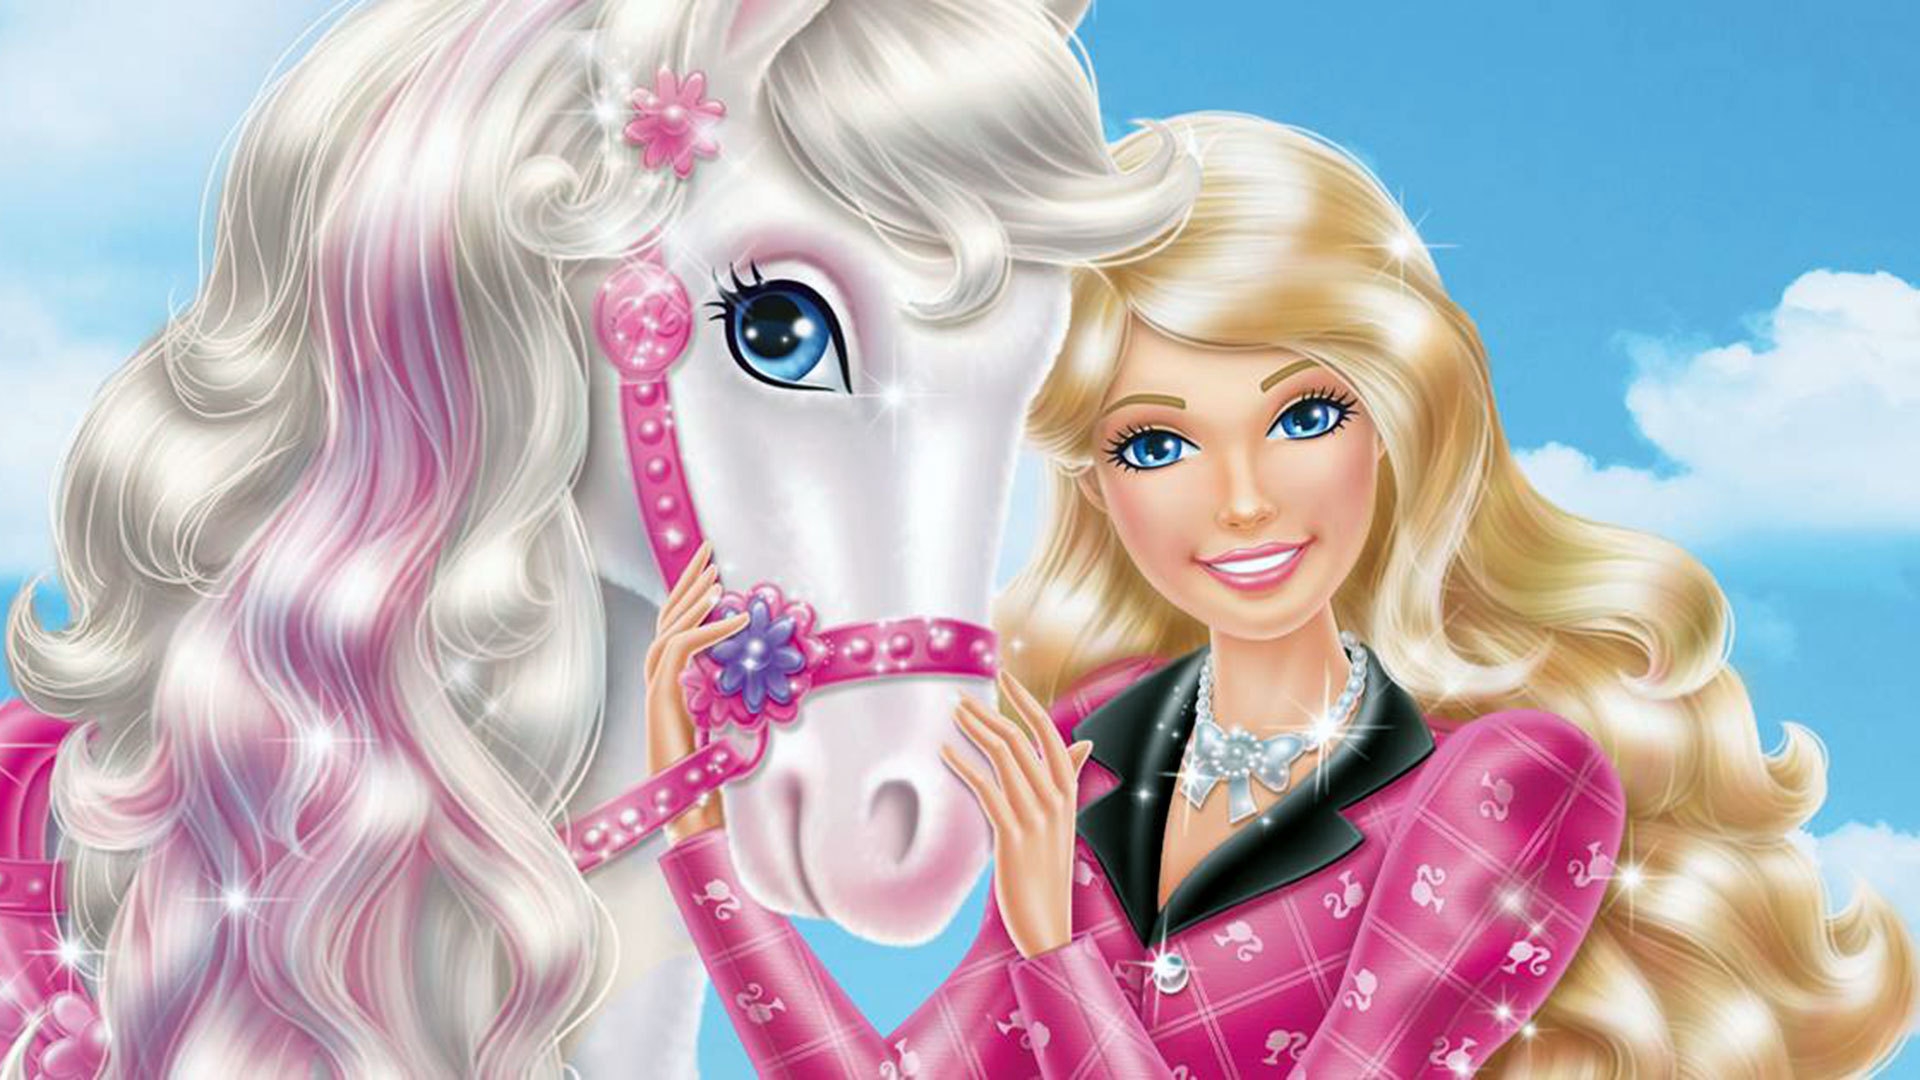 Wallpaper Dasktop Gambar Barbie 3d Image Num 7